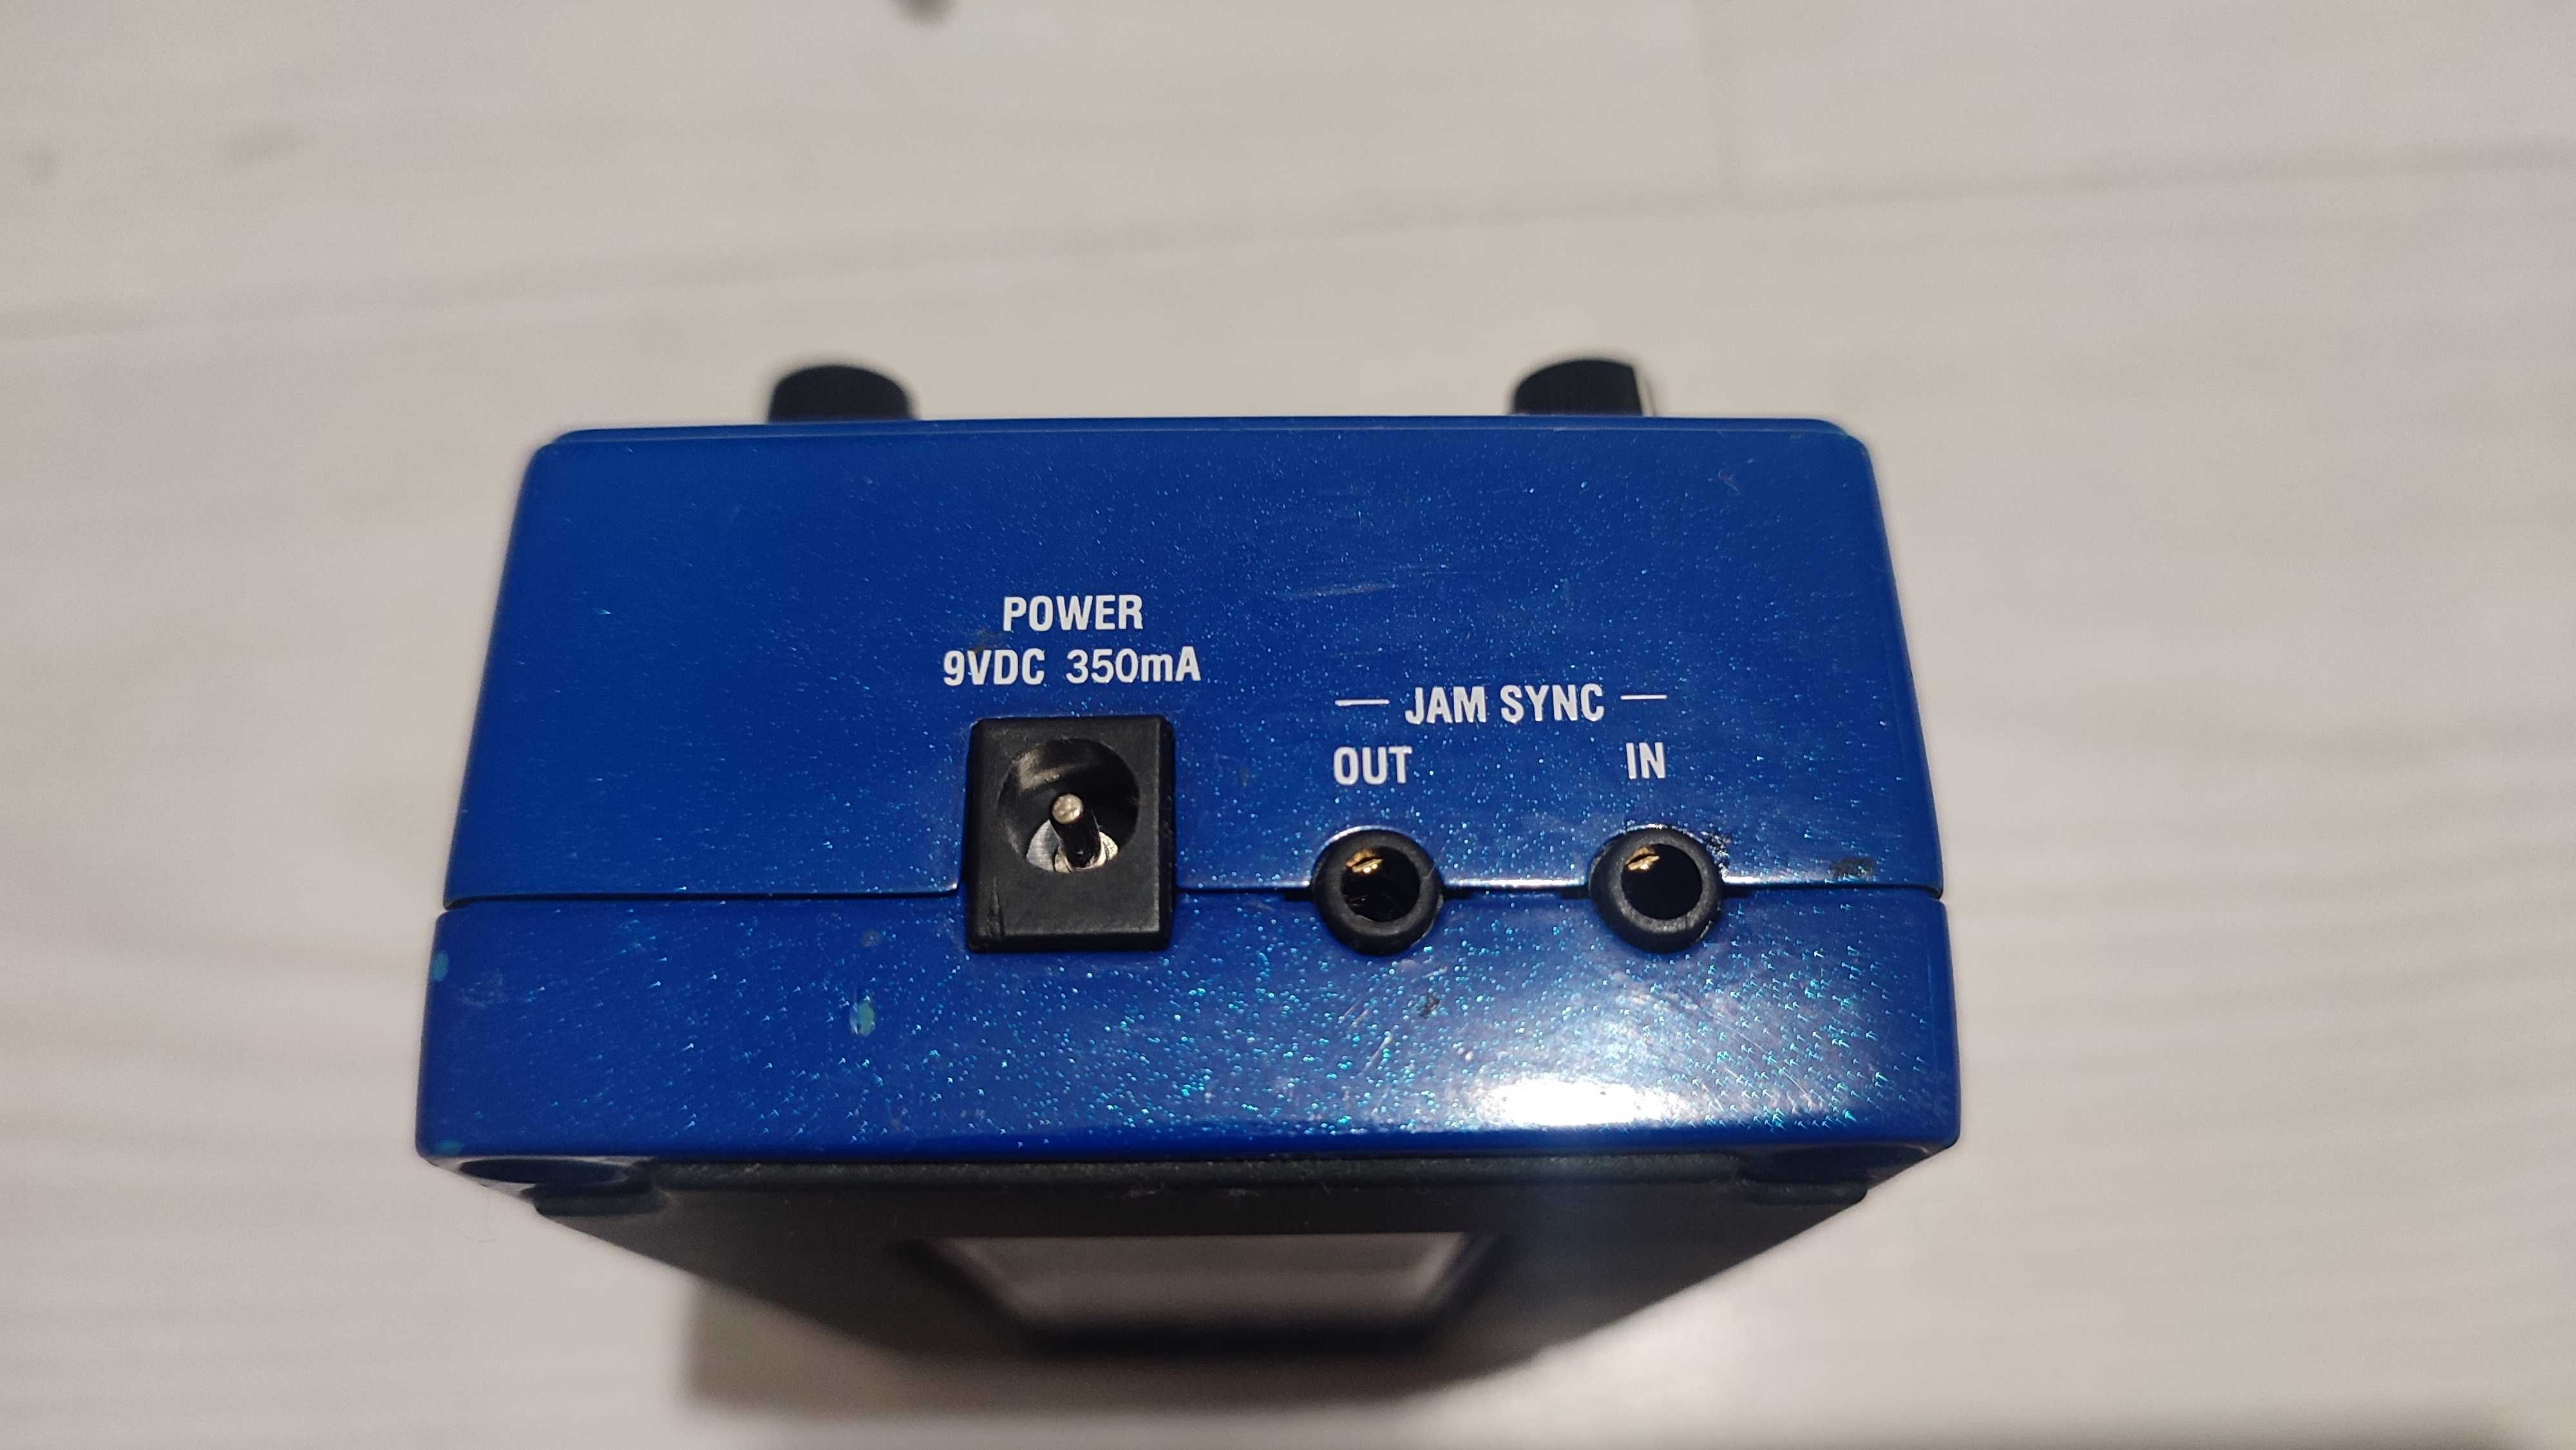 Digitech Jamman Solo XT pedală looper